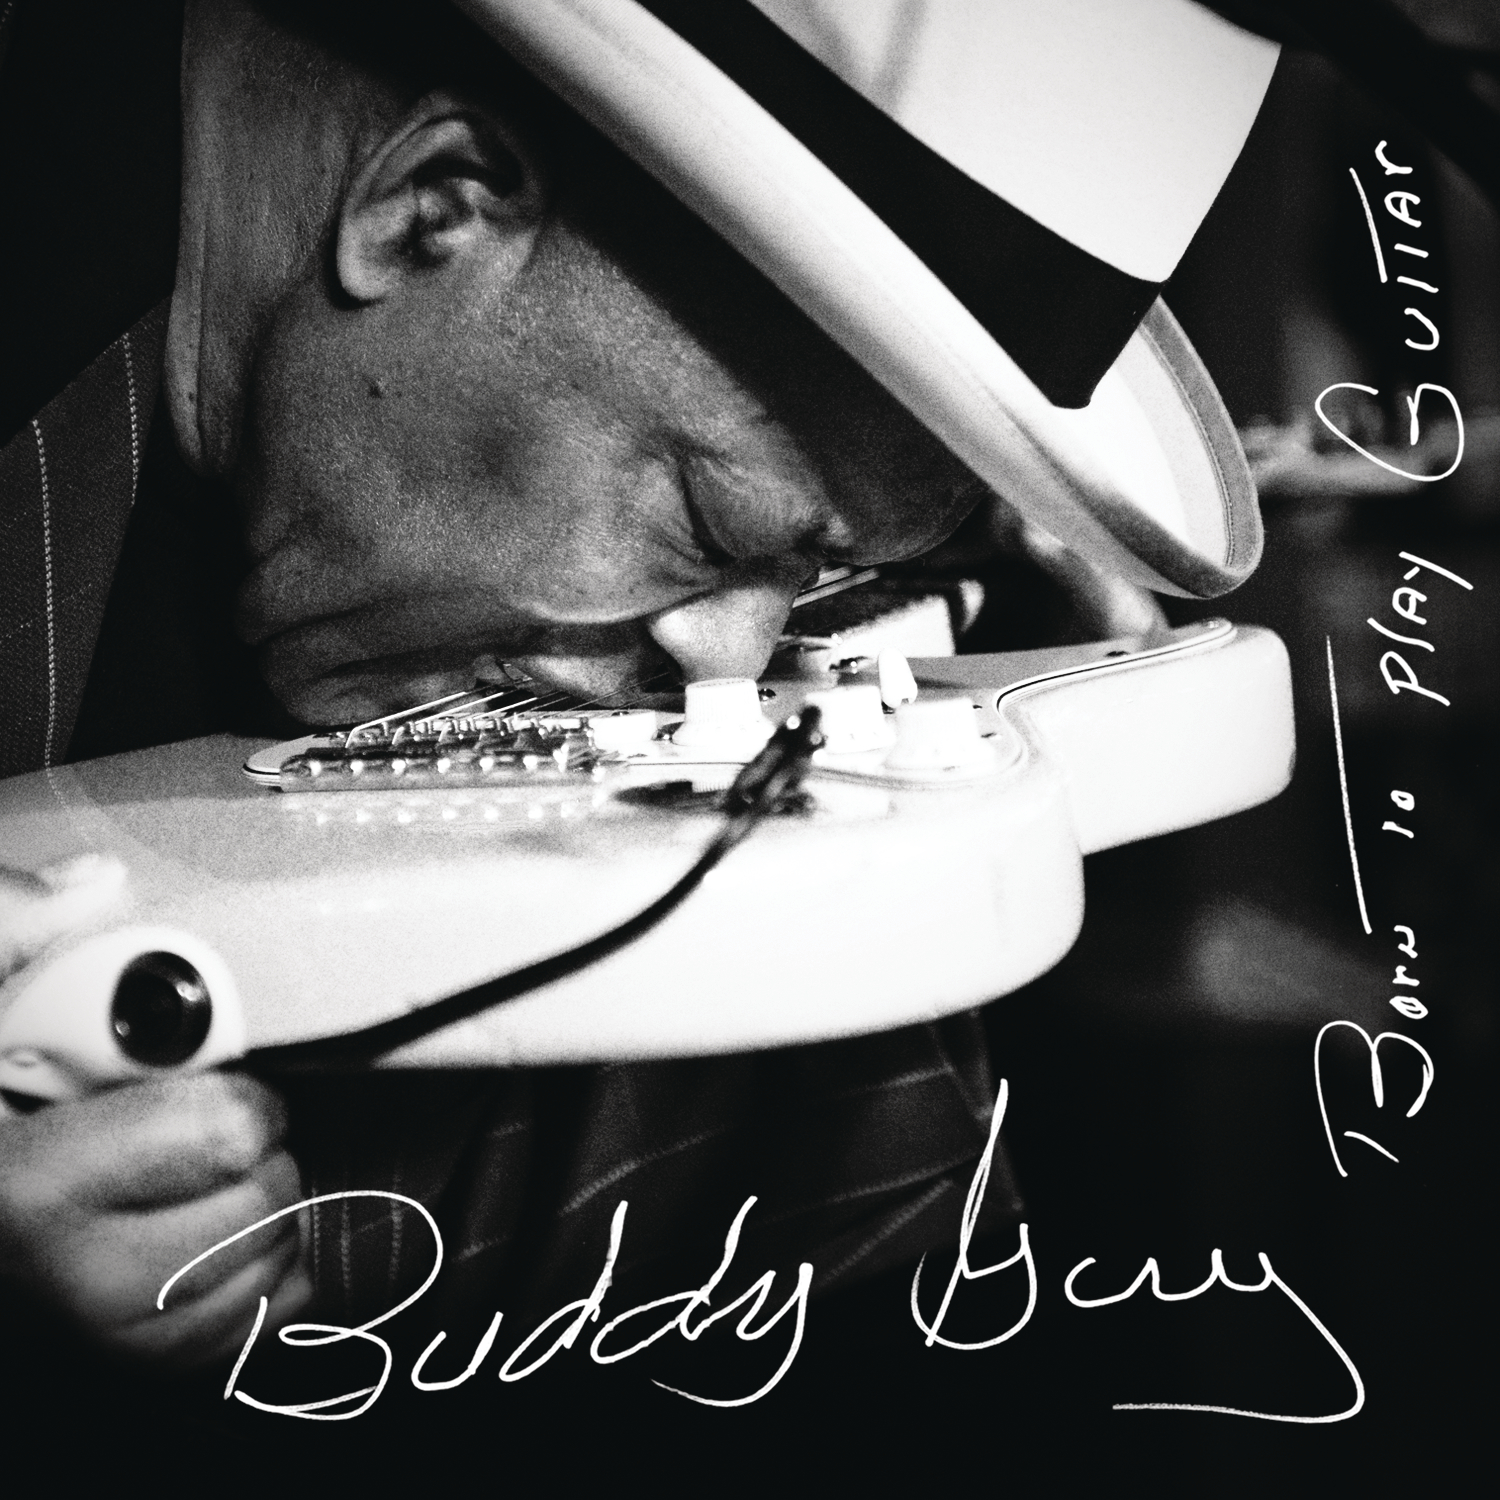 Buddy Guy - Born To Play Guitar in DTS-wav (op speciaal verzoek)